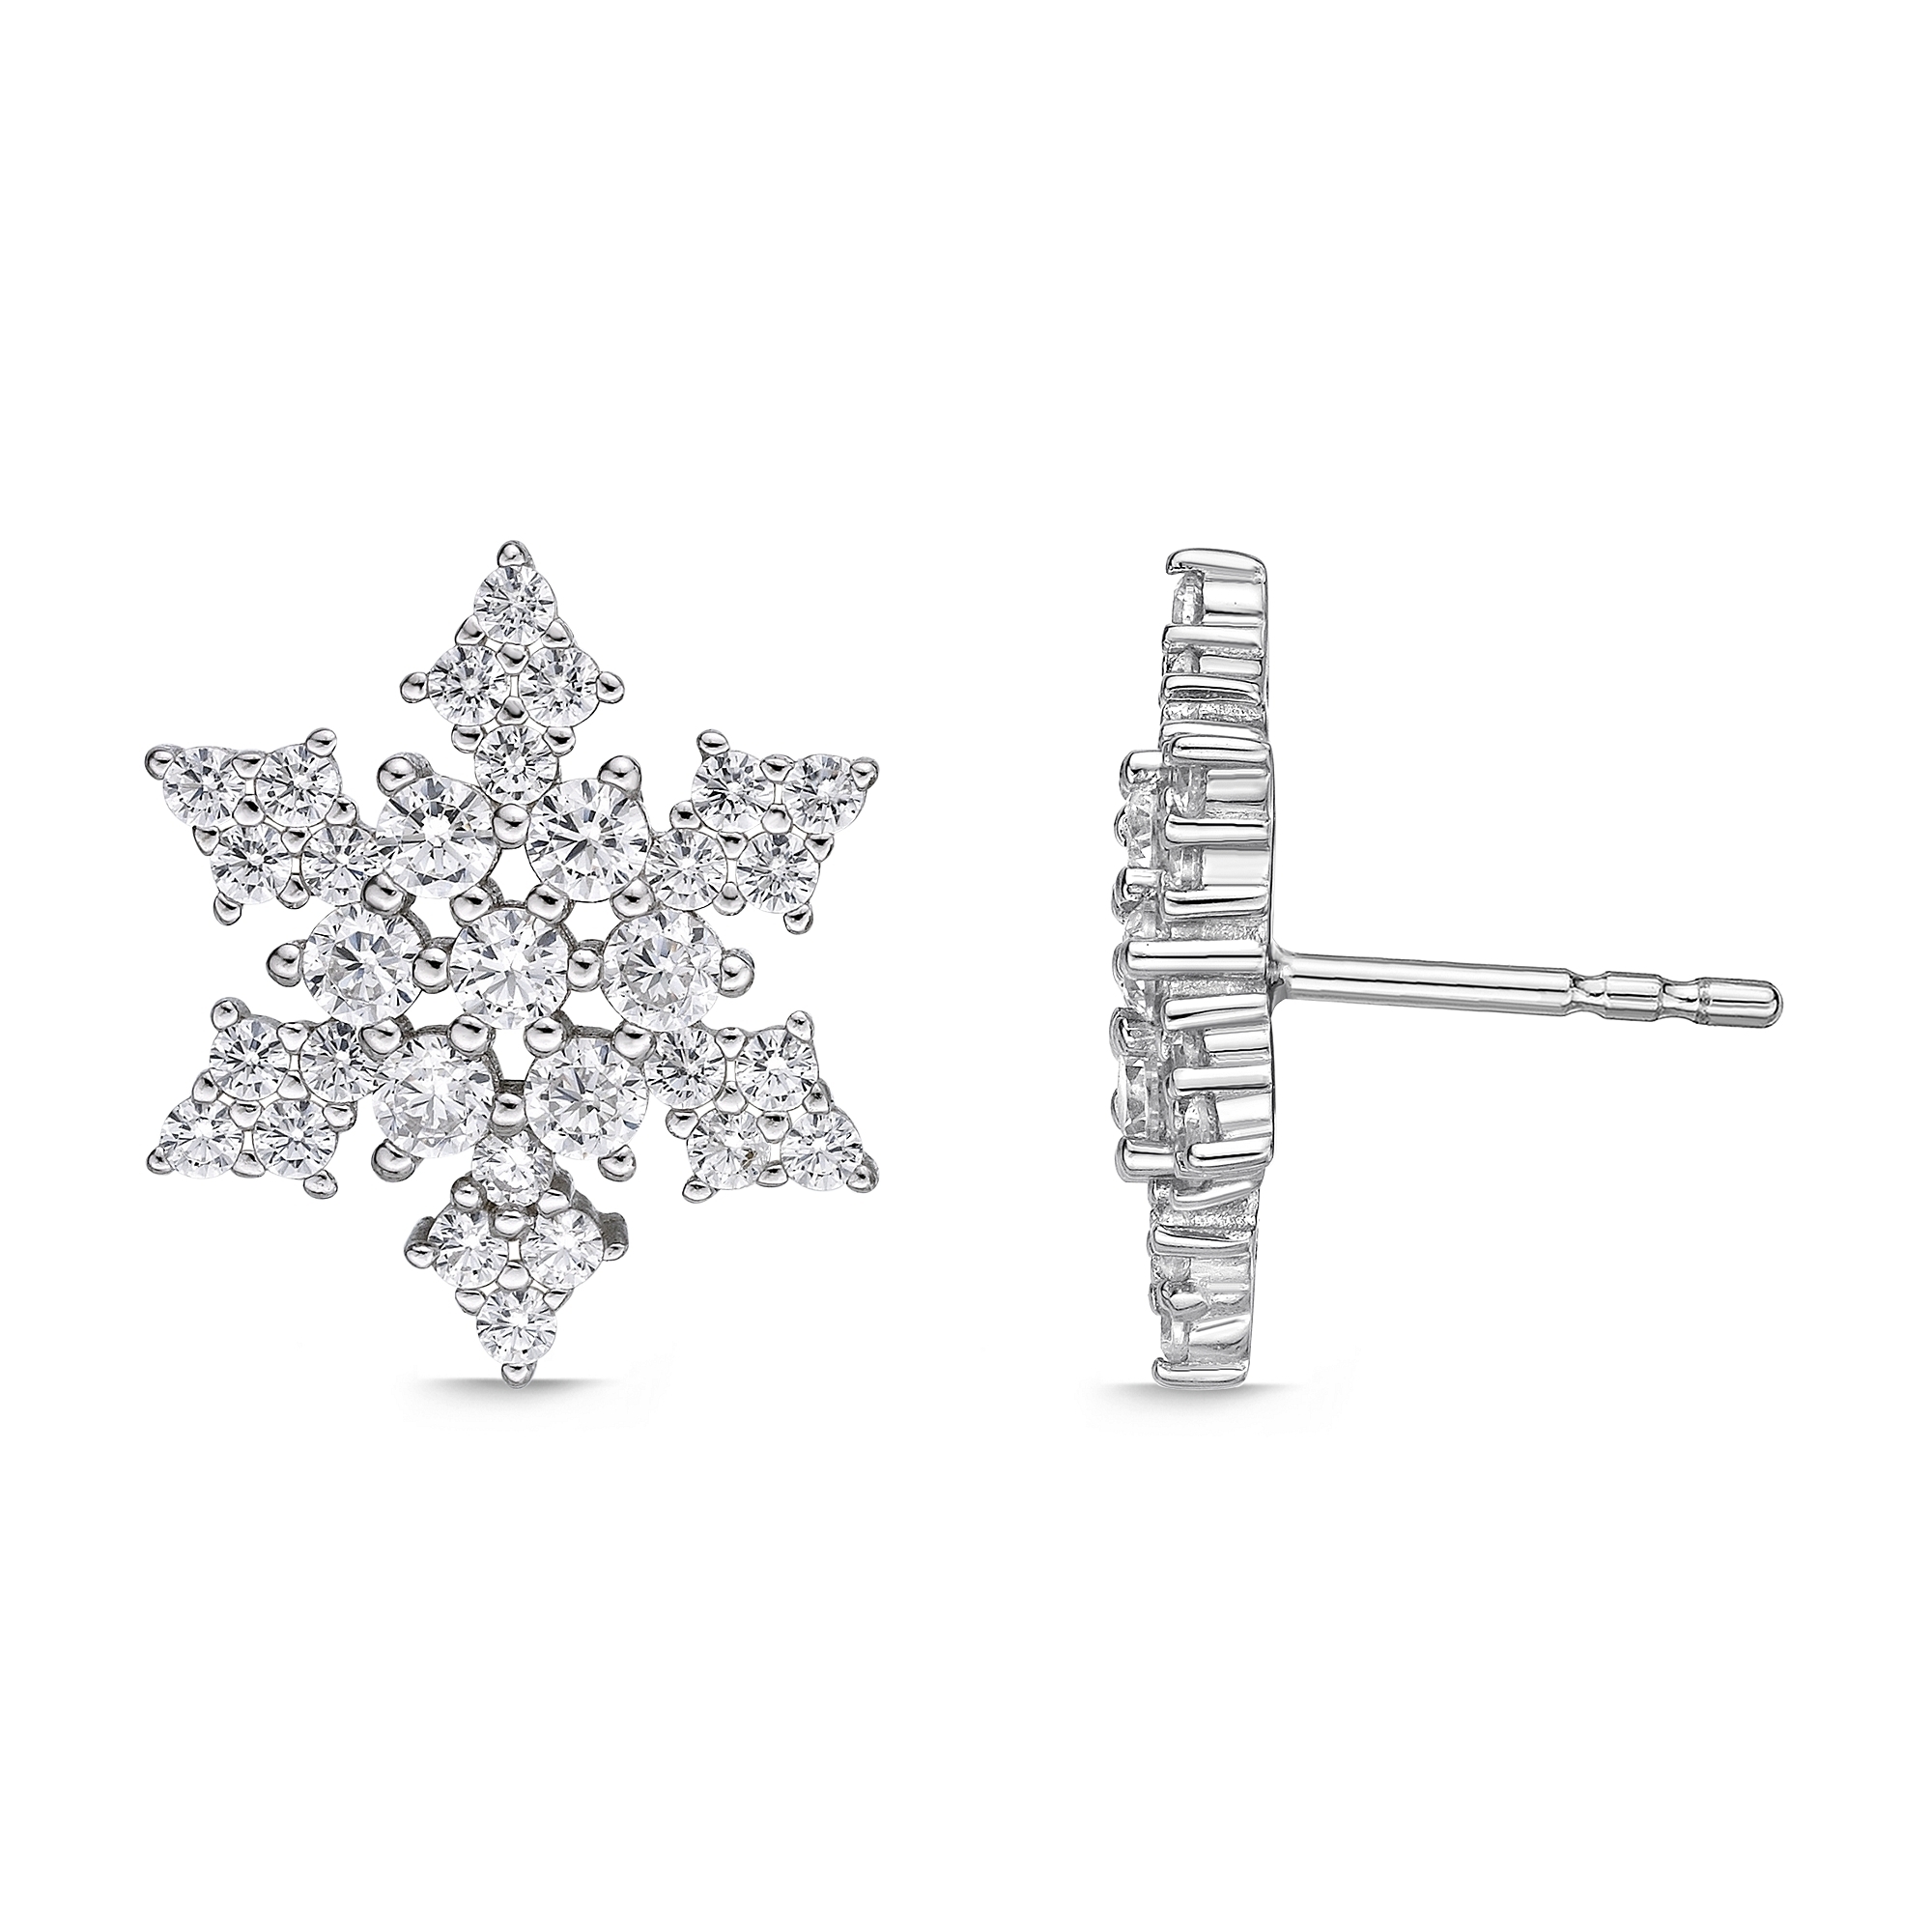 49182-earrings-cubic-zirconia-silver-6-1.jpg